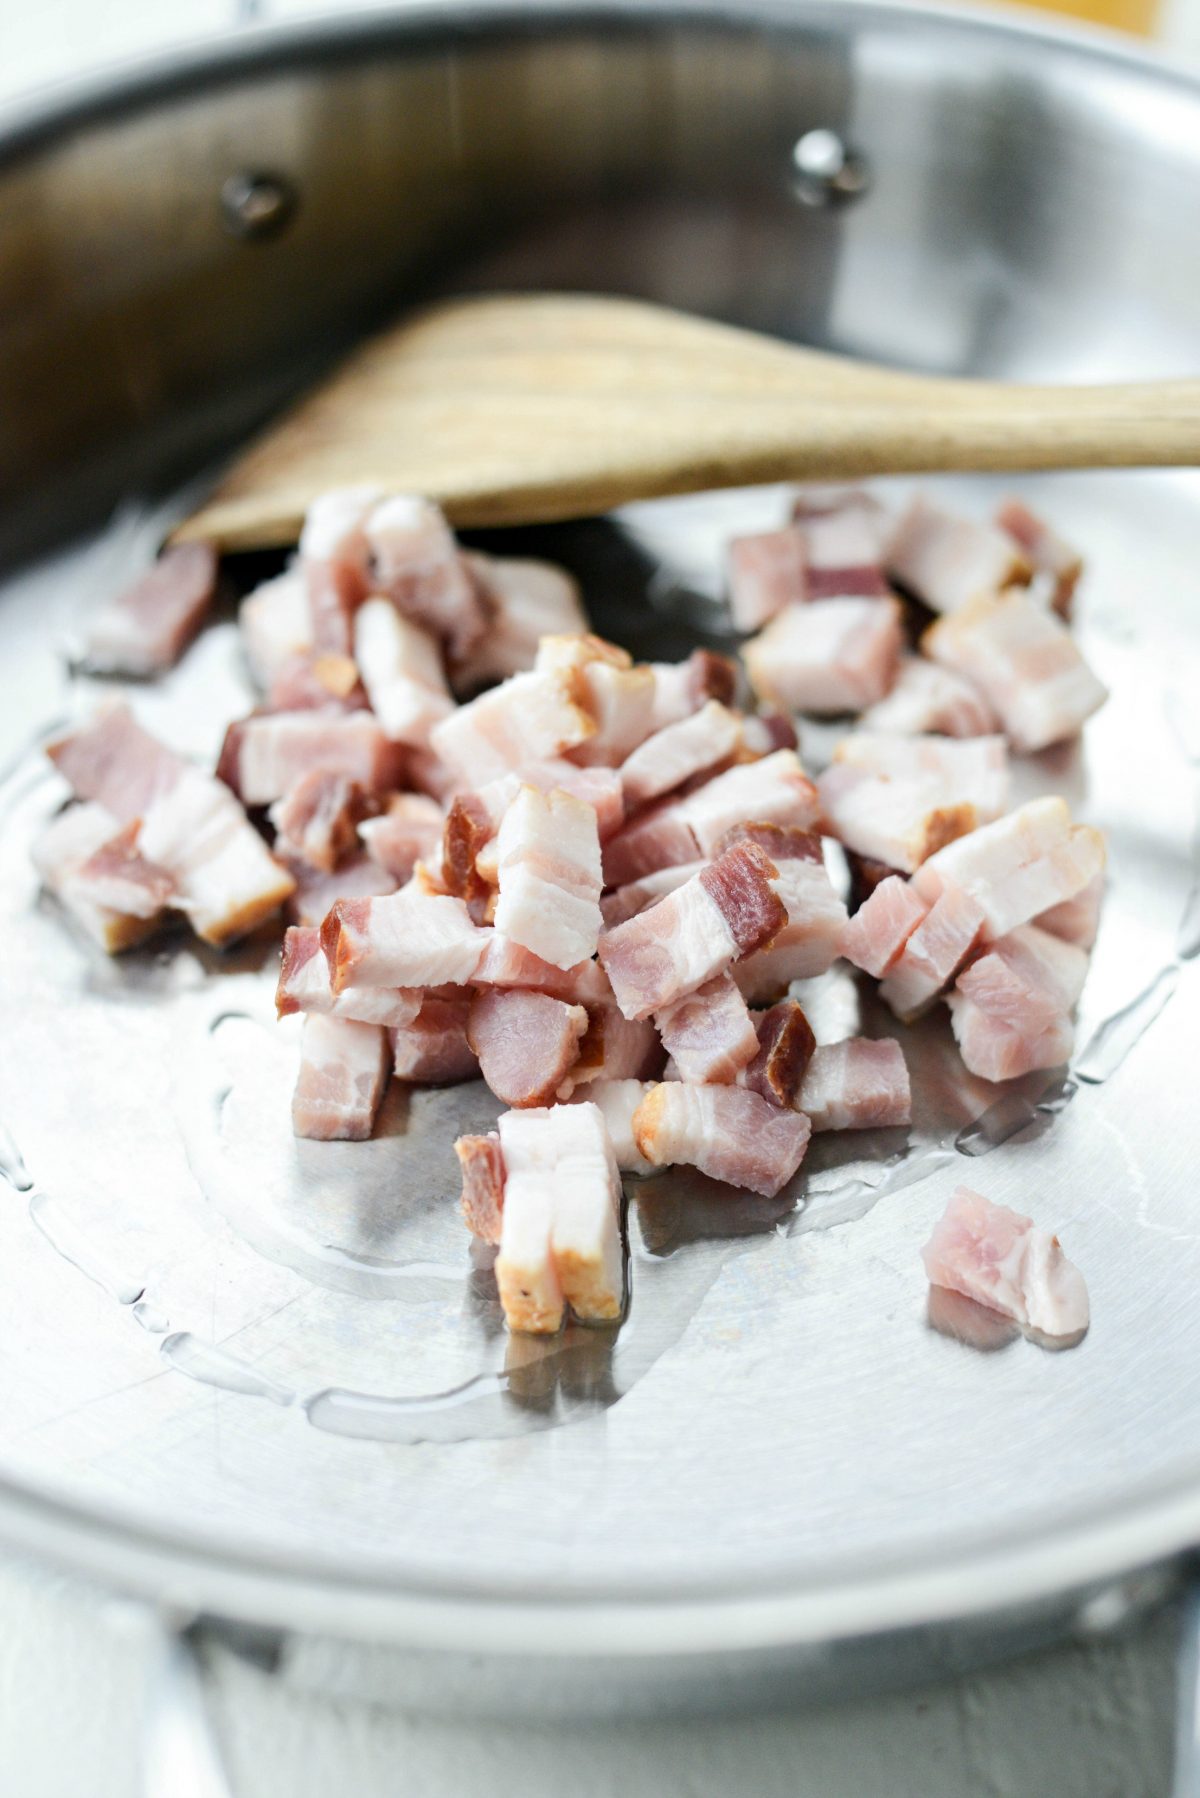 cook bacon pieces